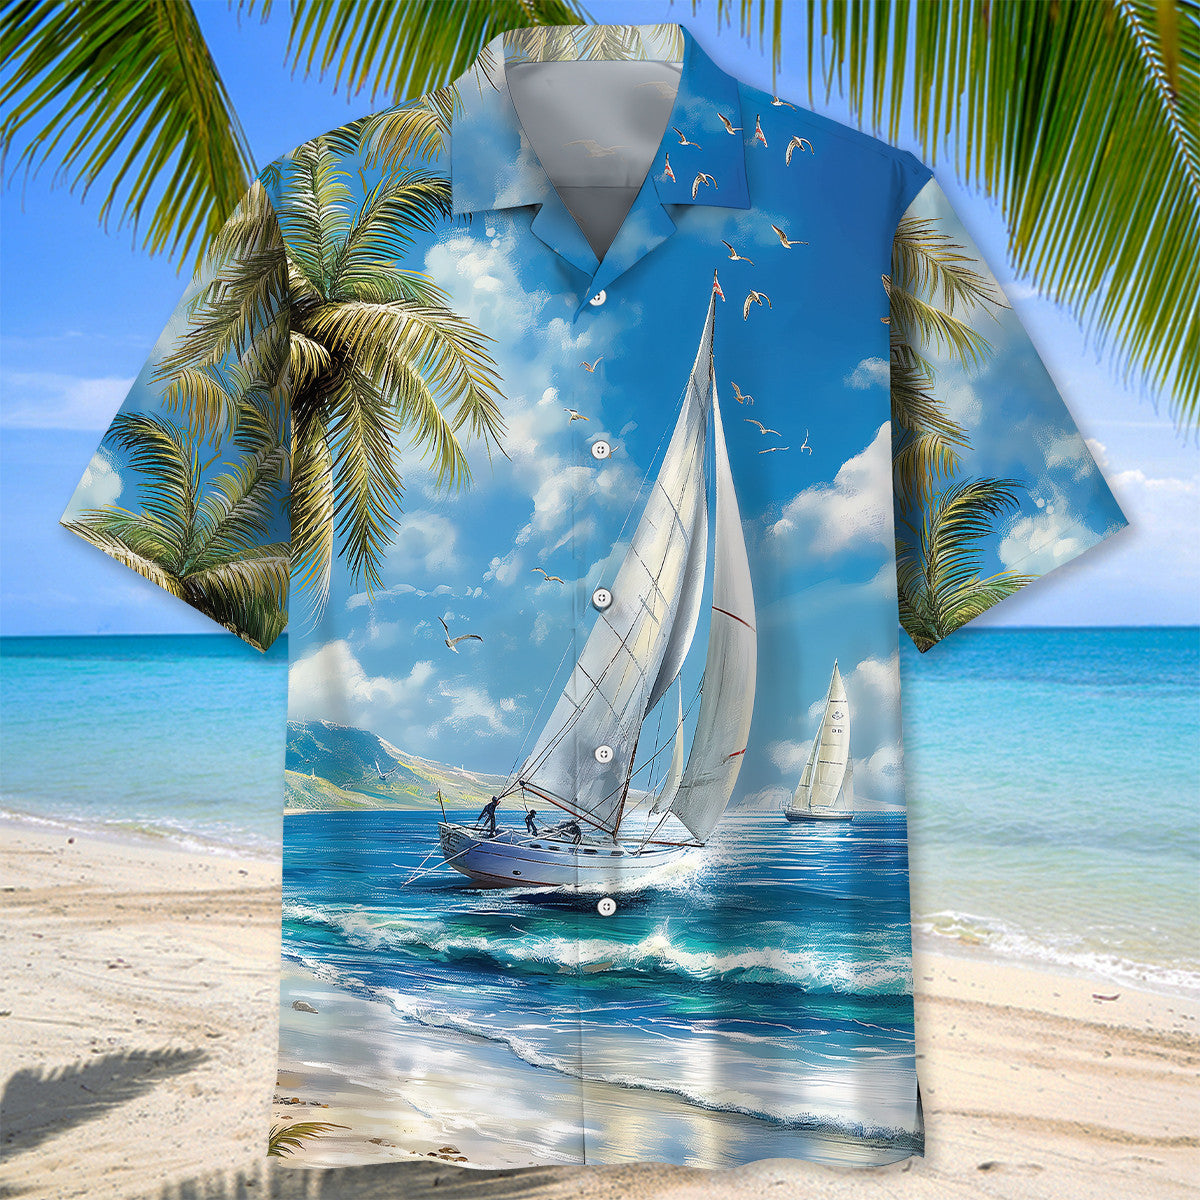 Tranquil Sailboat Vintage Hawaiian Shirt